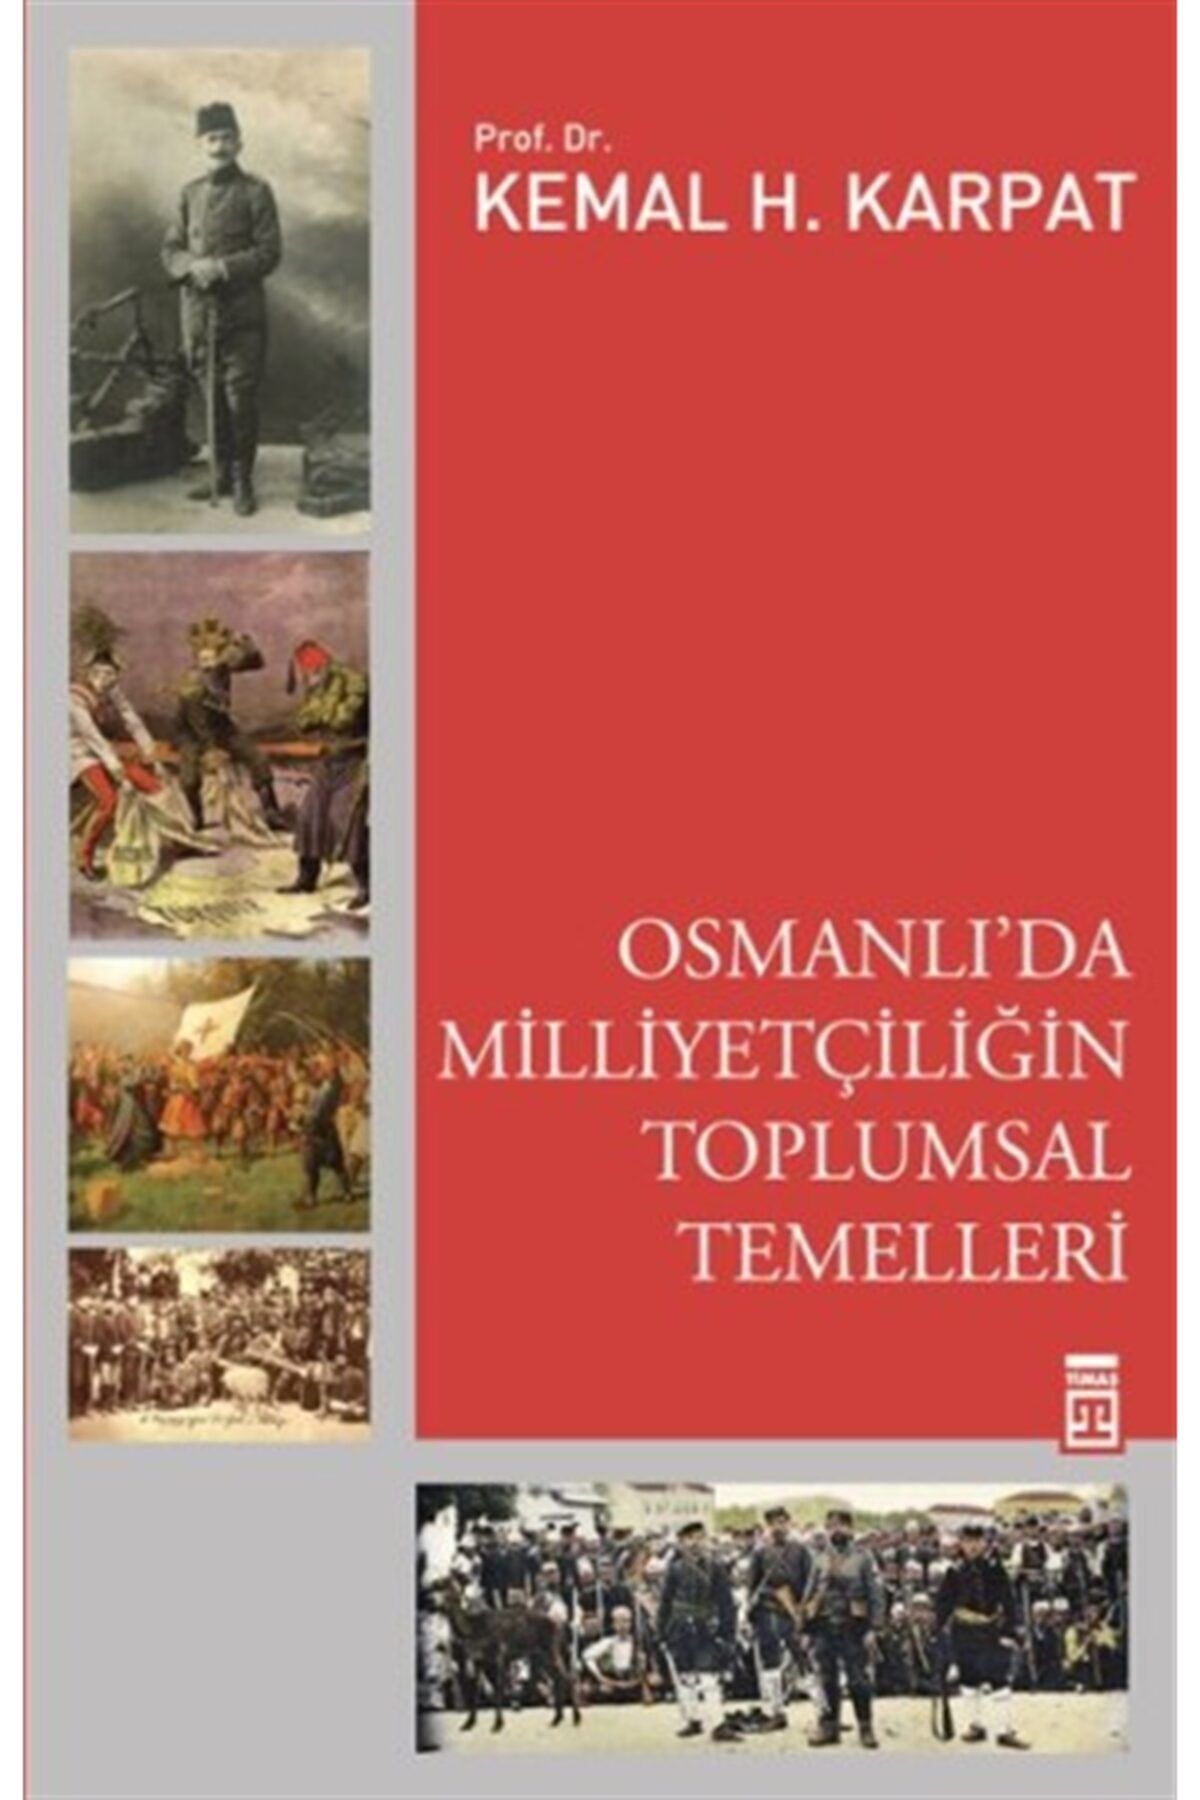 Ayrıntı Yayınları Osmanlı'da Milliyetçiliğin Toplumsal Temelleri